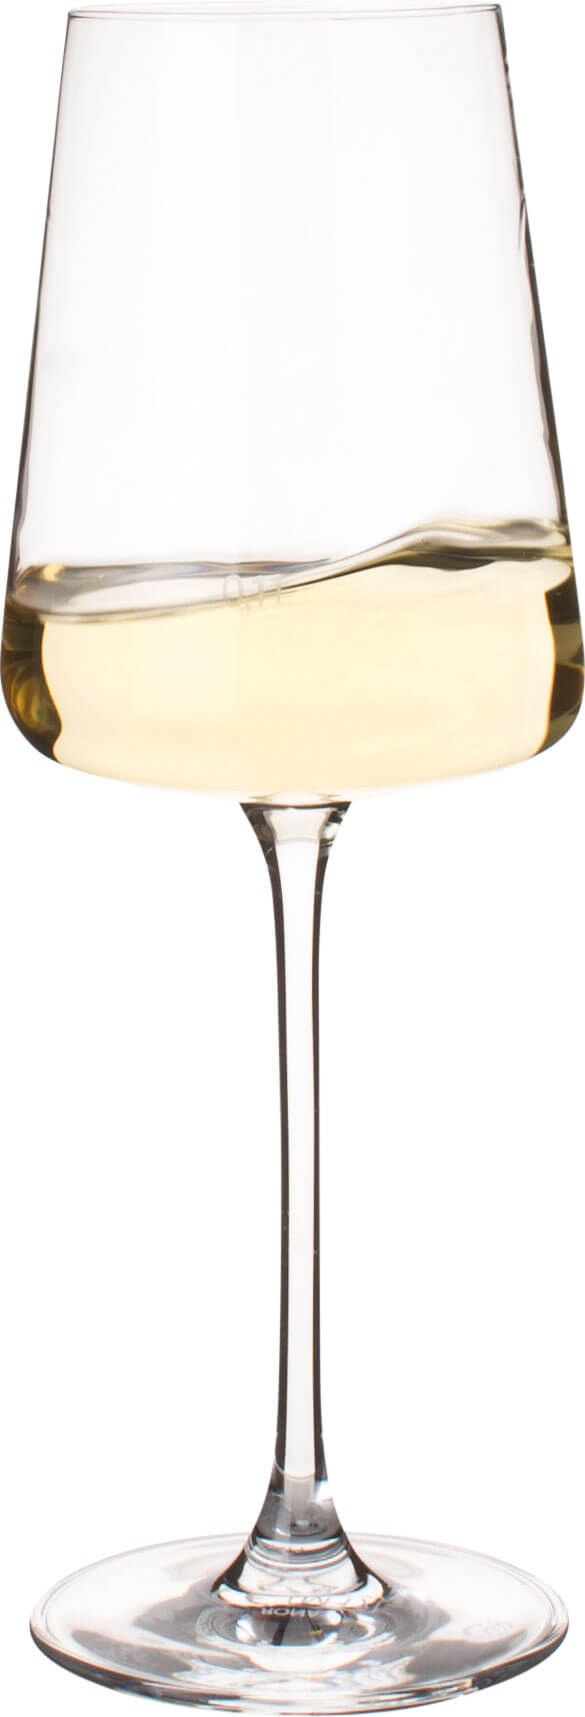 Wine glass Mode, Rona - 360ml, 0,1l Eiche (1 pc.)